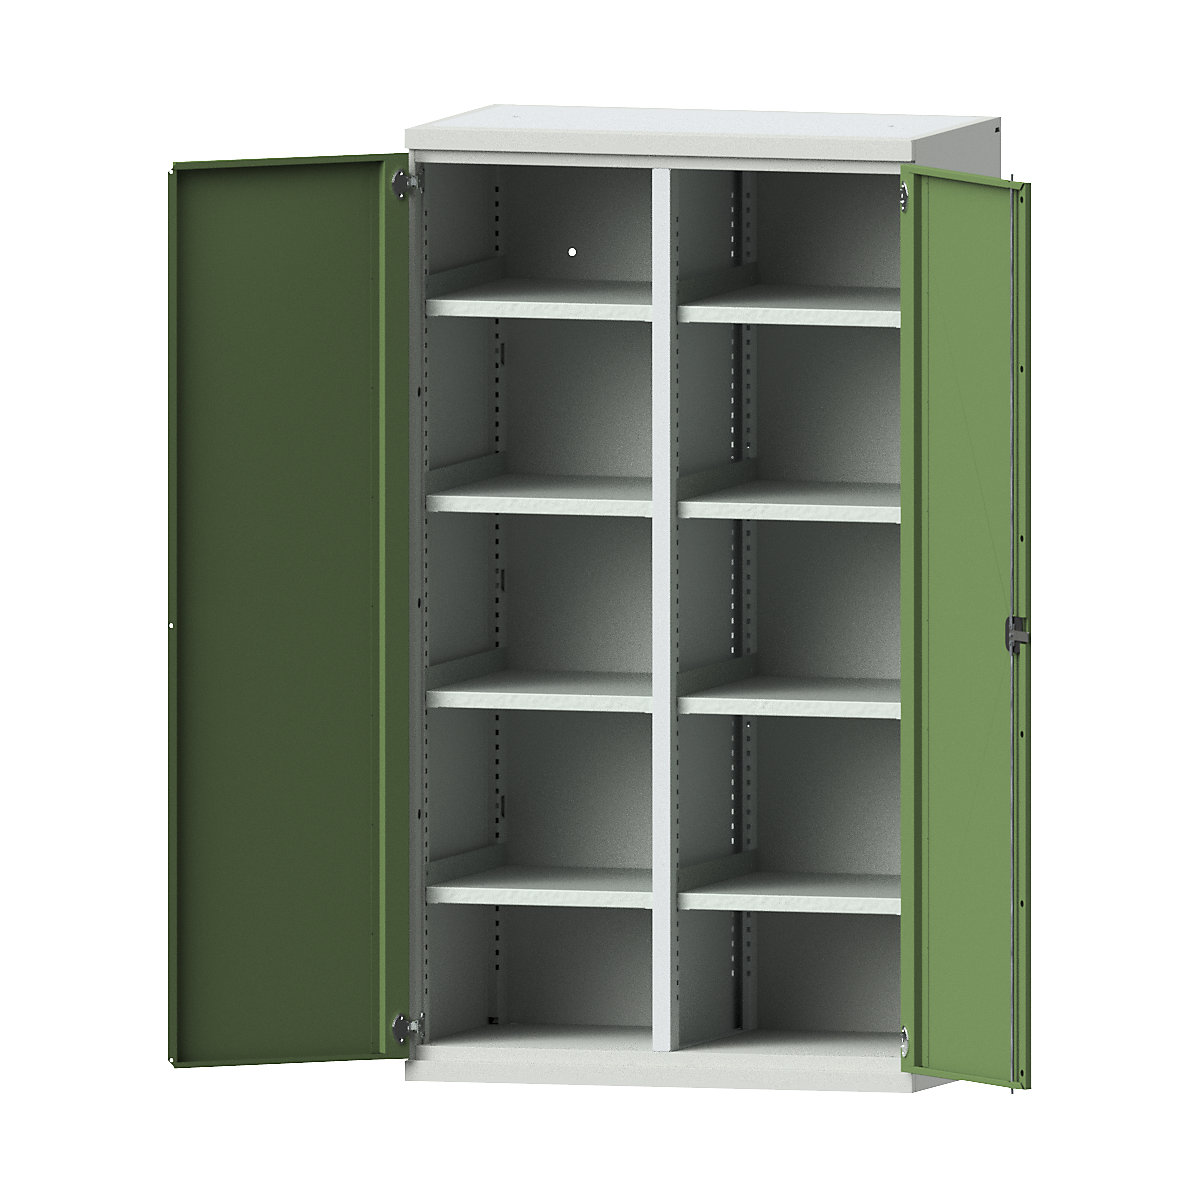 Heavy duty cupboard made of steel – eurokraft pro, 8 shelves, light grey / reseda green-3